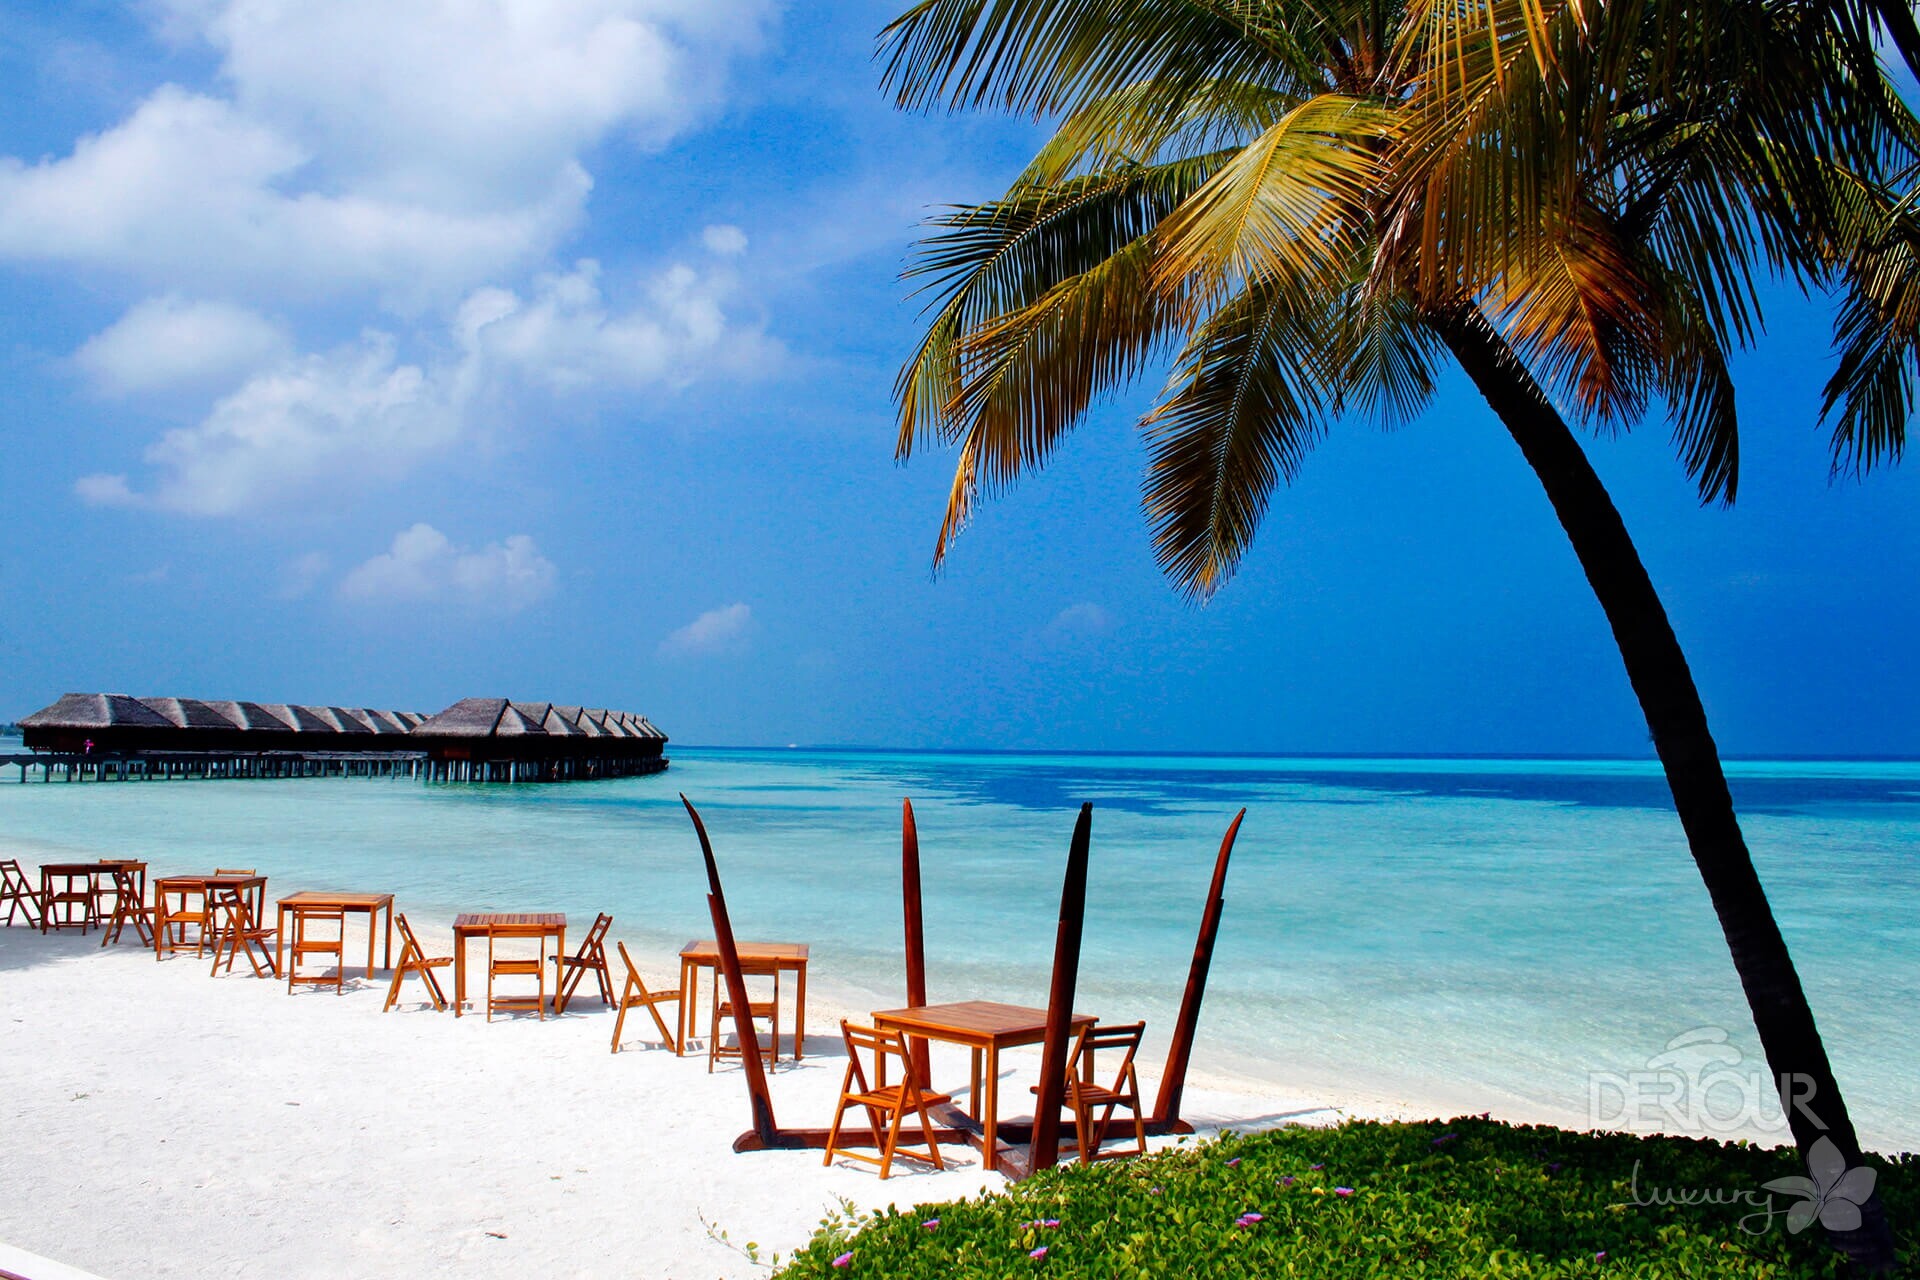 LUX* South Ari Atoll (LUX* Maldives)